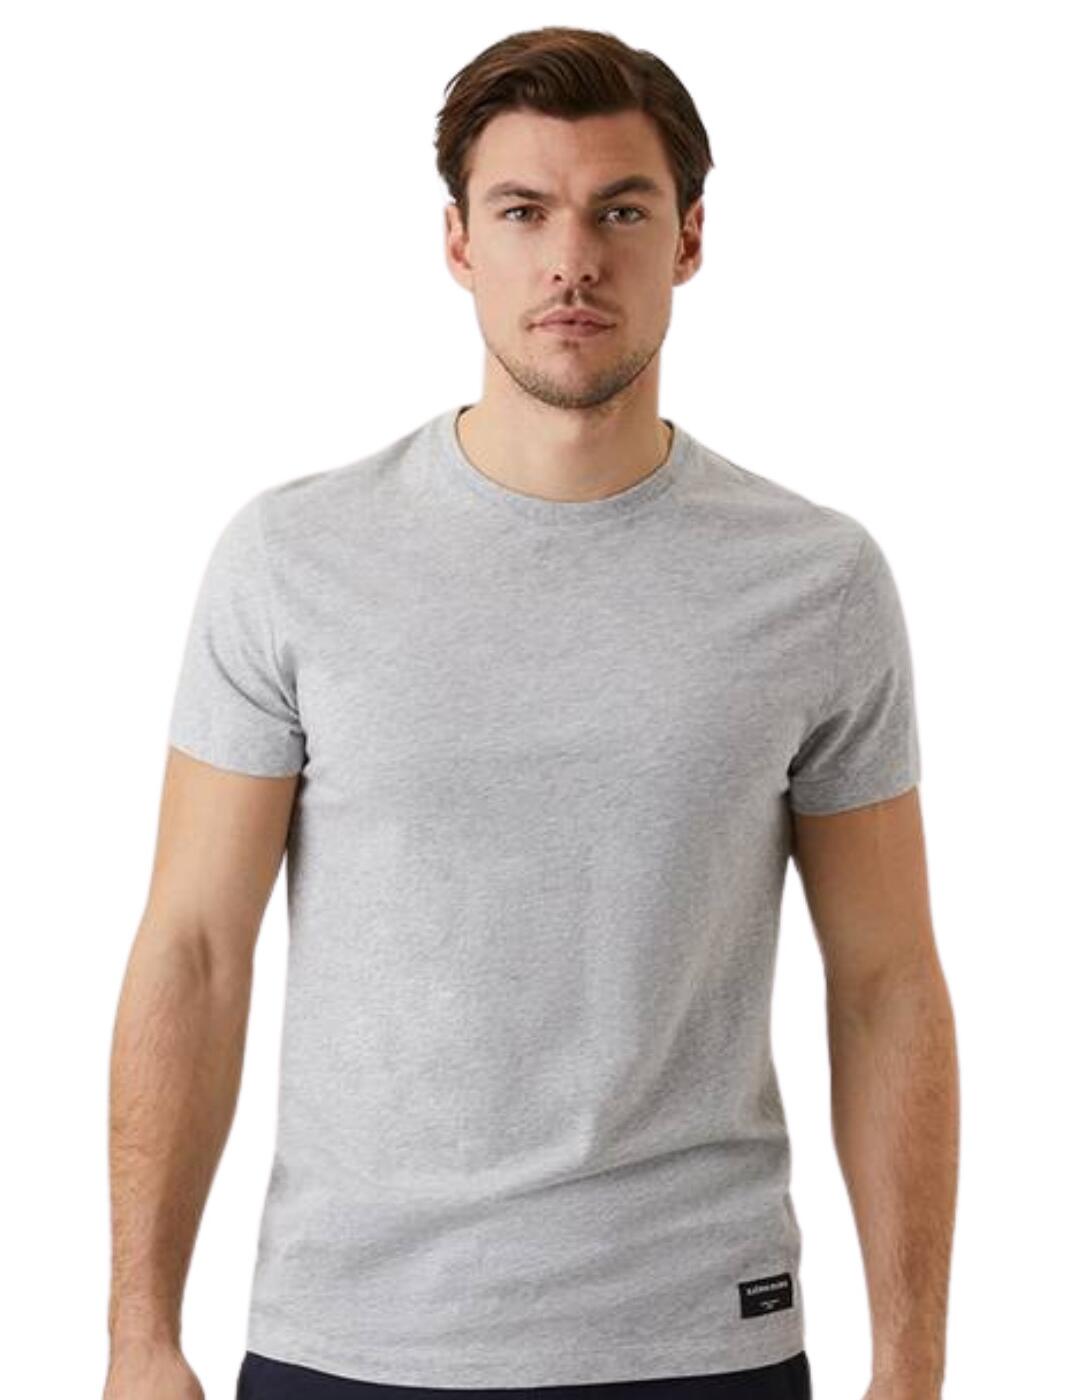 Bjorn Borg Centre T-shirt Light Grey Melange 